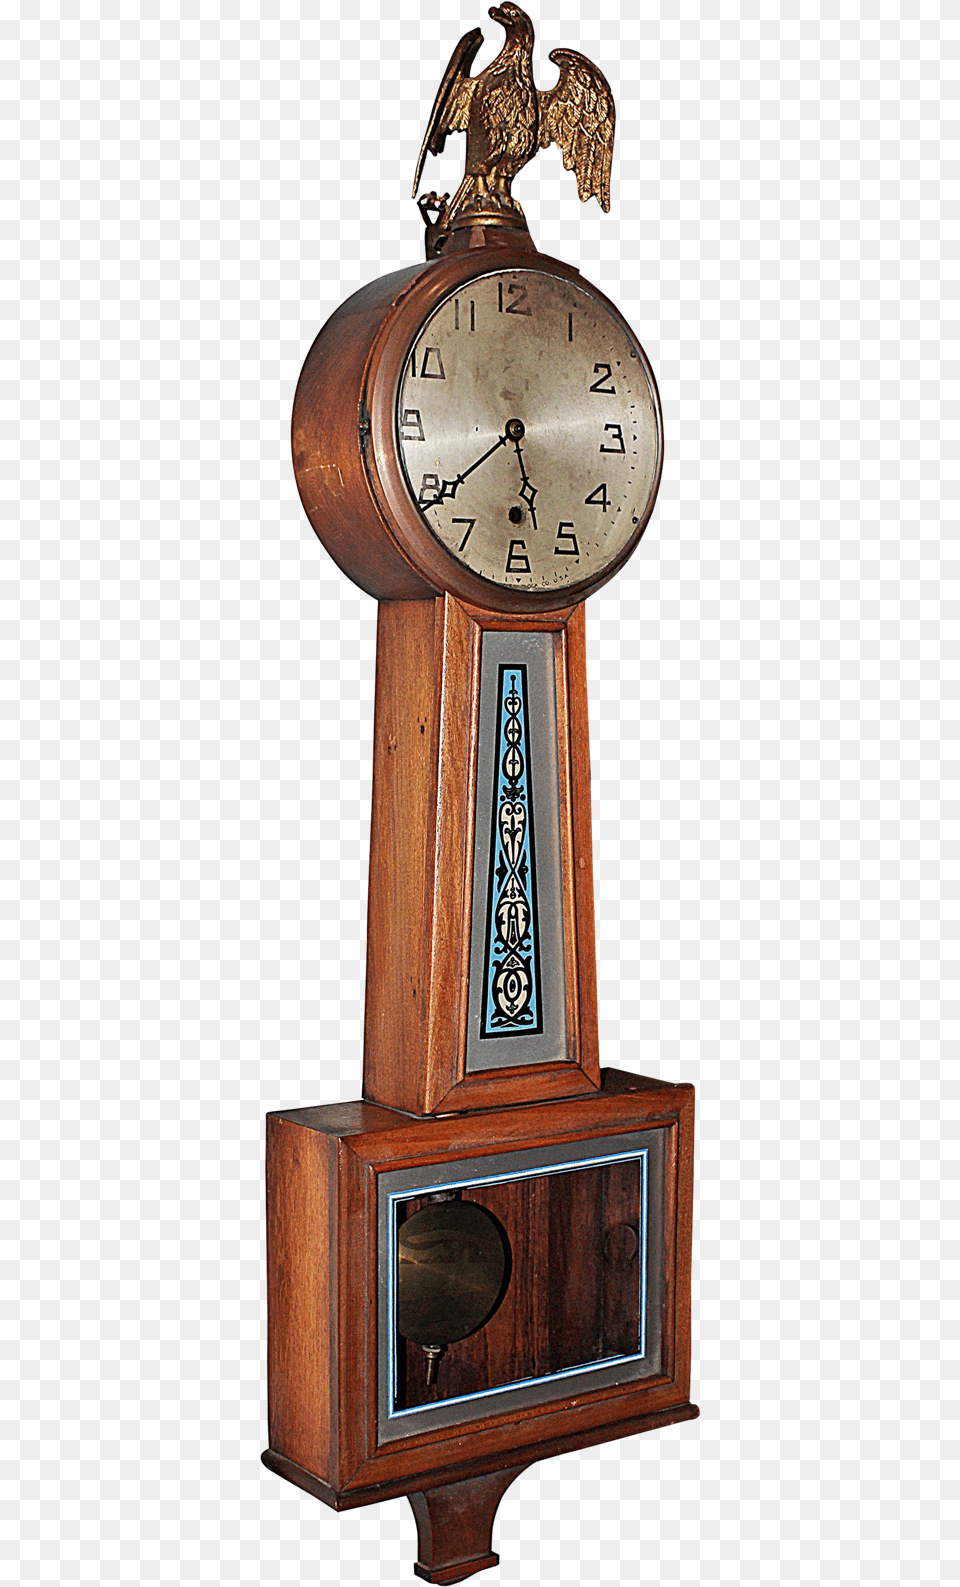 Banjo Clock Transparent Background Banjo Clock, Analog Clock, Animal, Bird Free Png